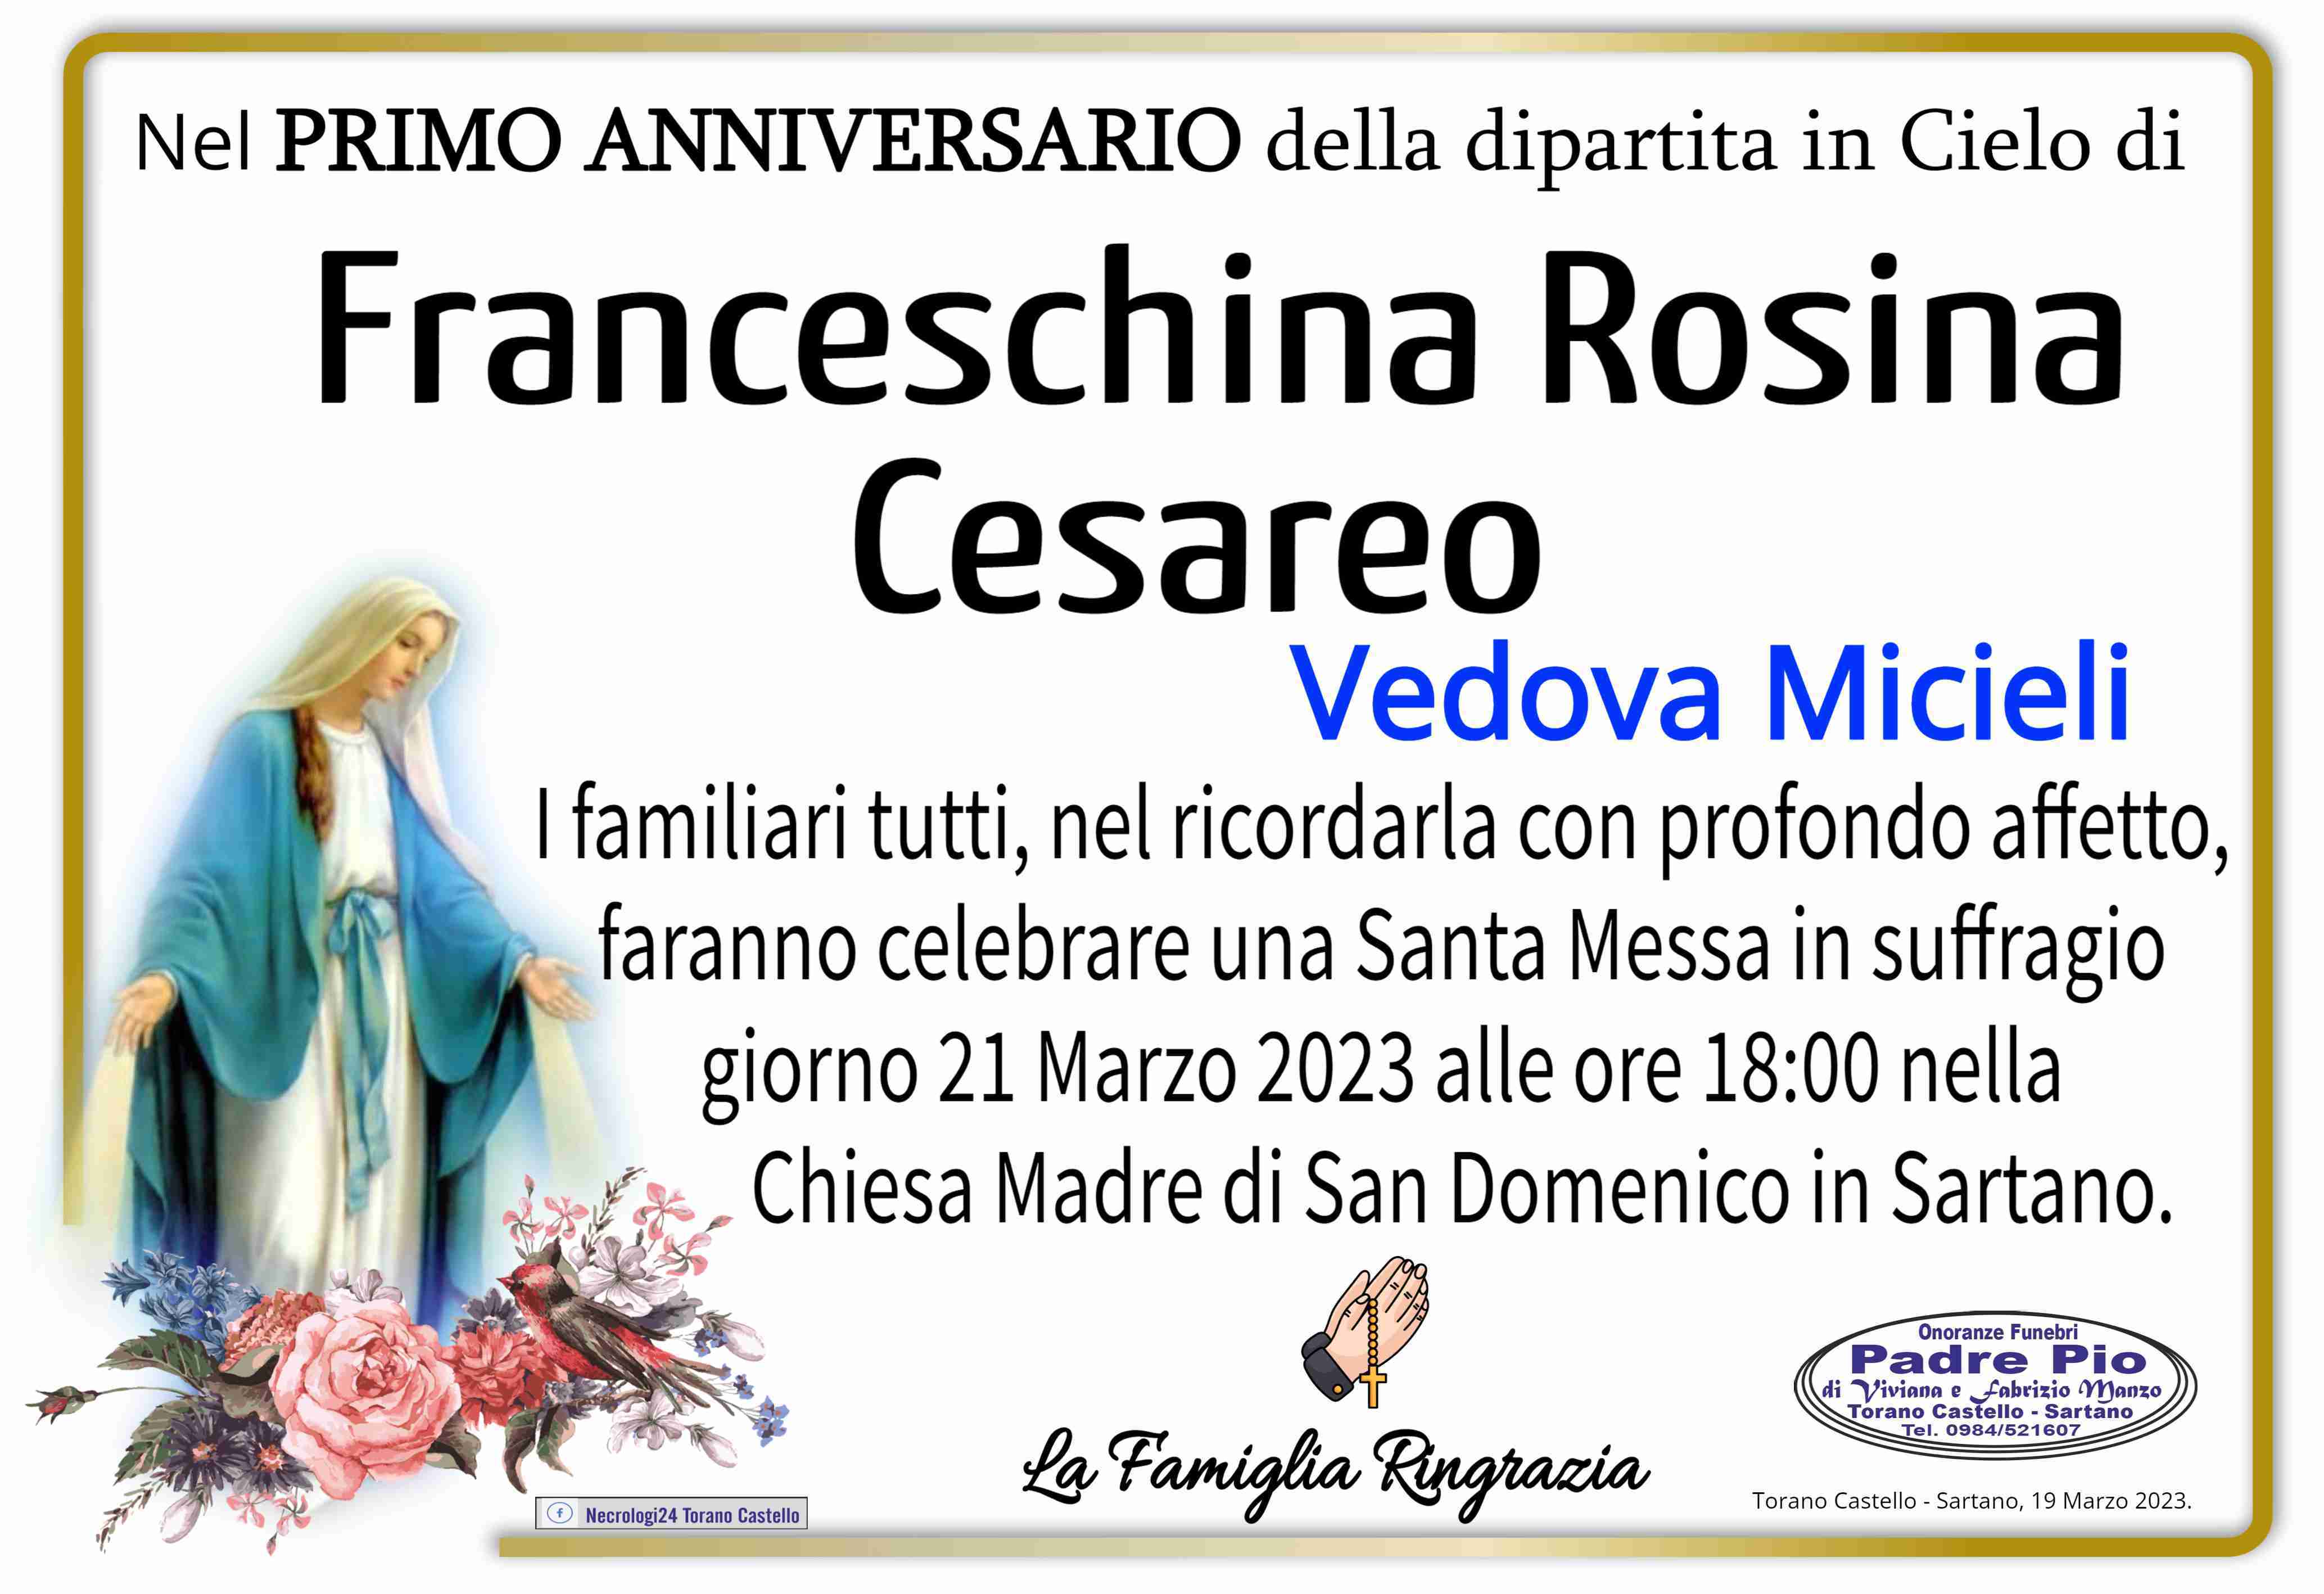 Franceschina Rosina Cesareo